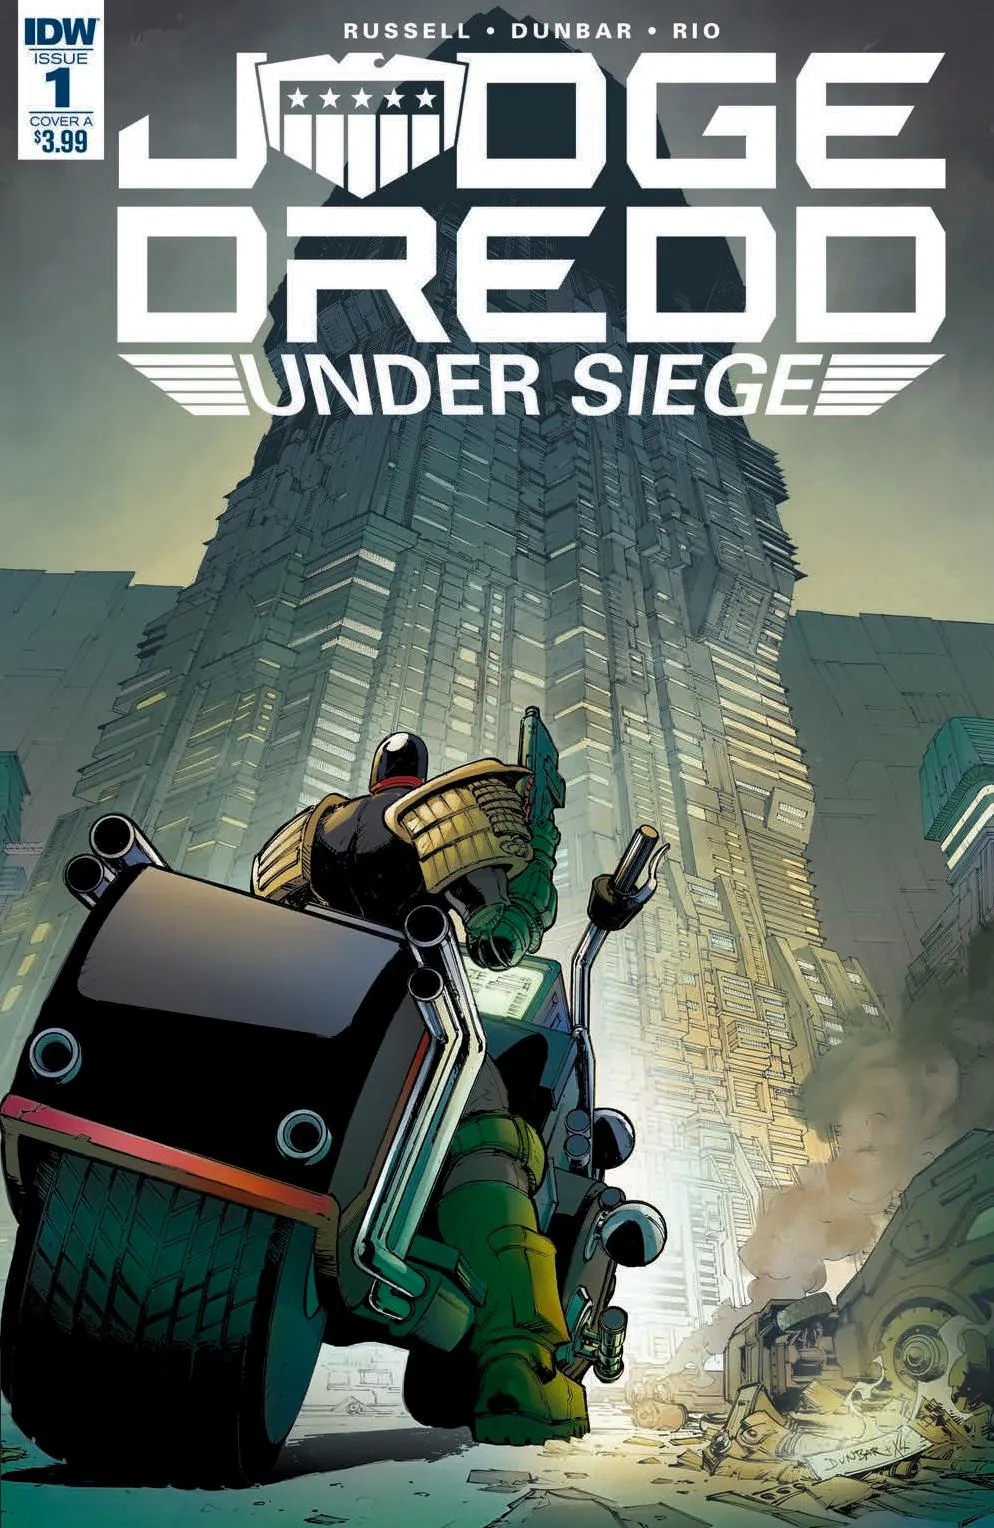 cover of 'Judge Dredd: Under Siege' no. 1